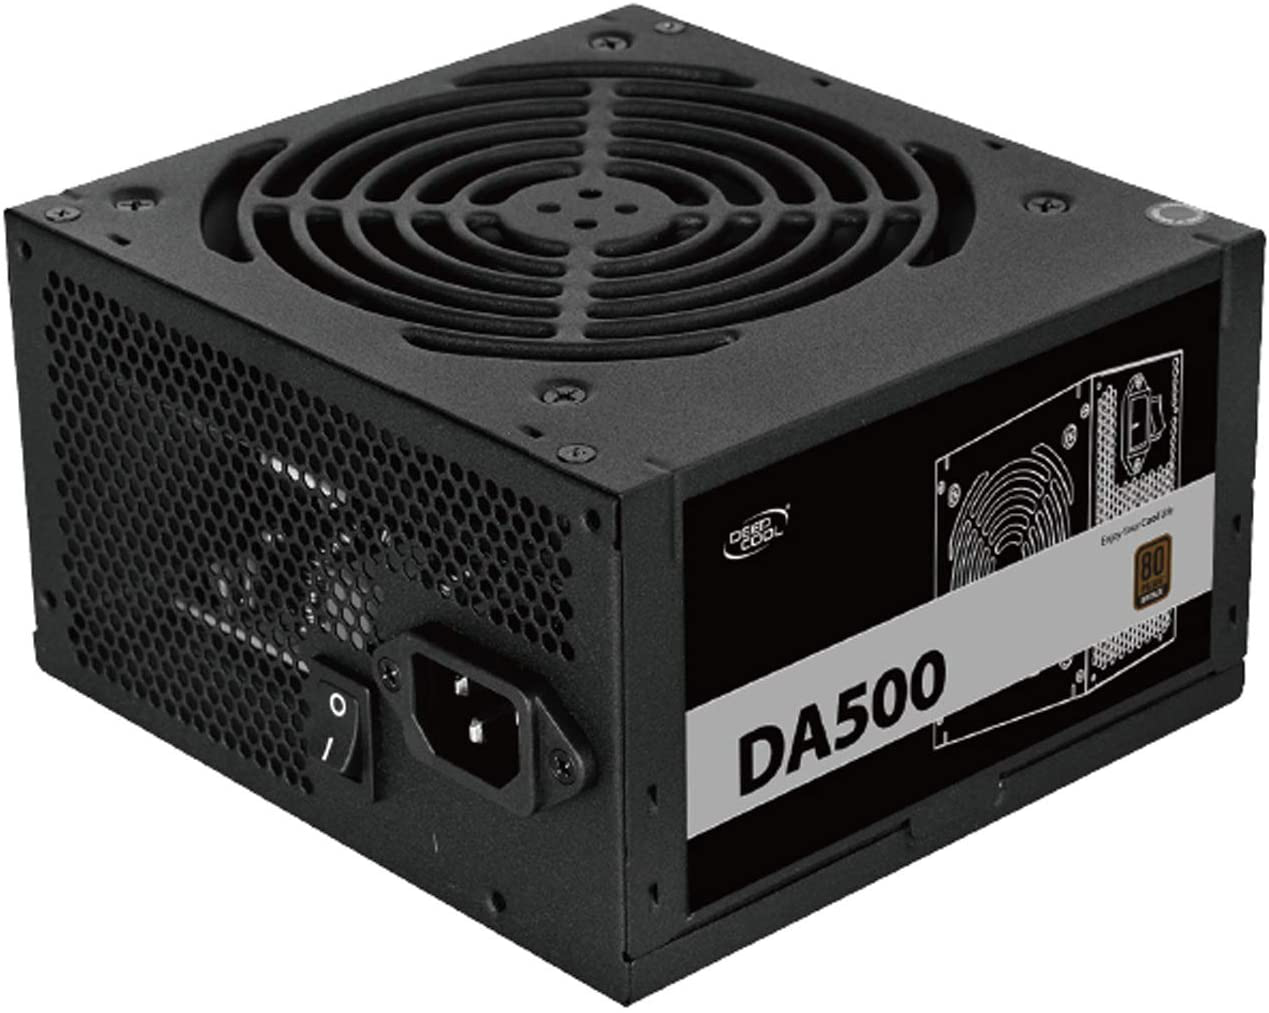 DEEPCOOL DA500N 80 plus Bronze Certified 500W Power Supply, ATX12V, 120Mm PWM Silent Fan, 5 Year Warranty